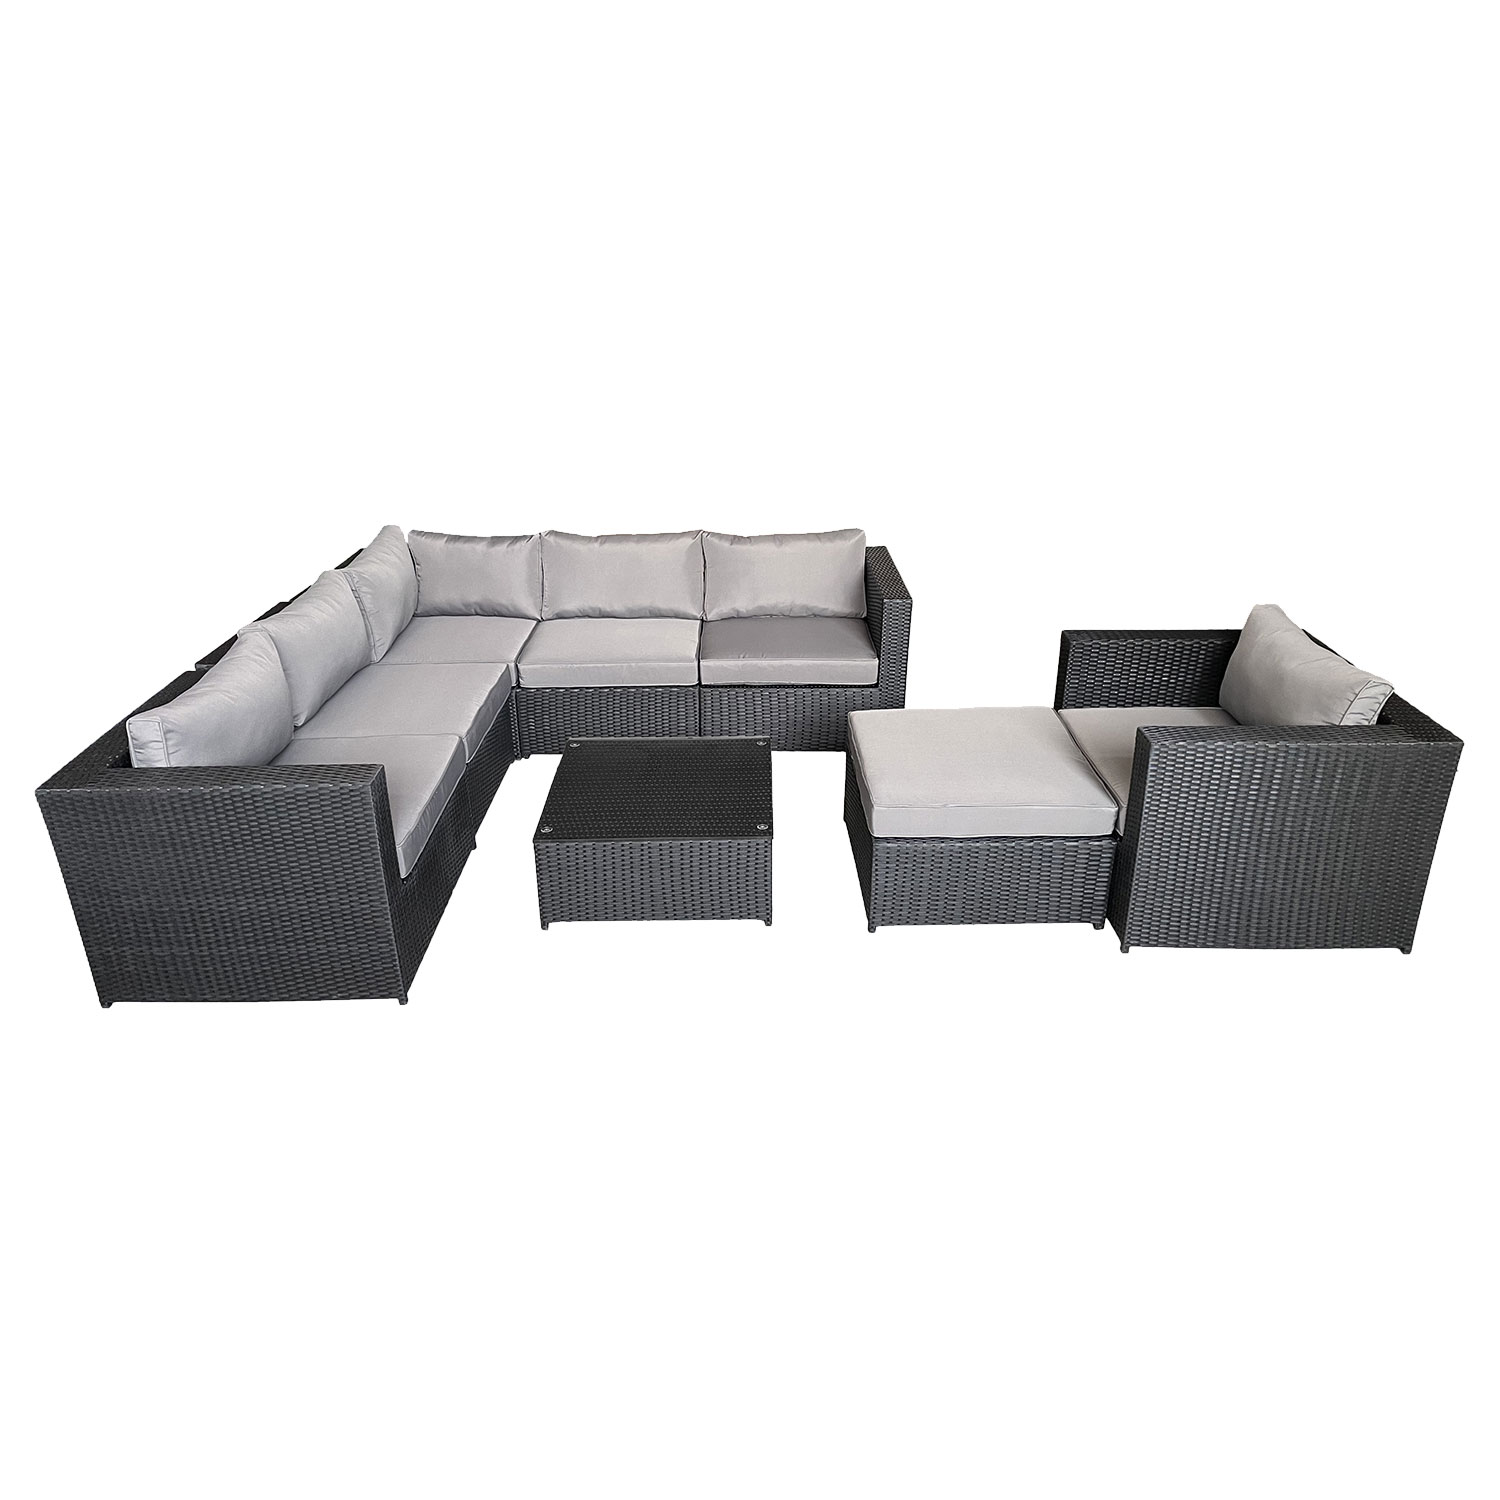 Set di mobili da giardino CARGÈSE in resina intrecciata nera, 7 posti a sedere - cuscini grigi